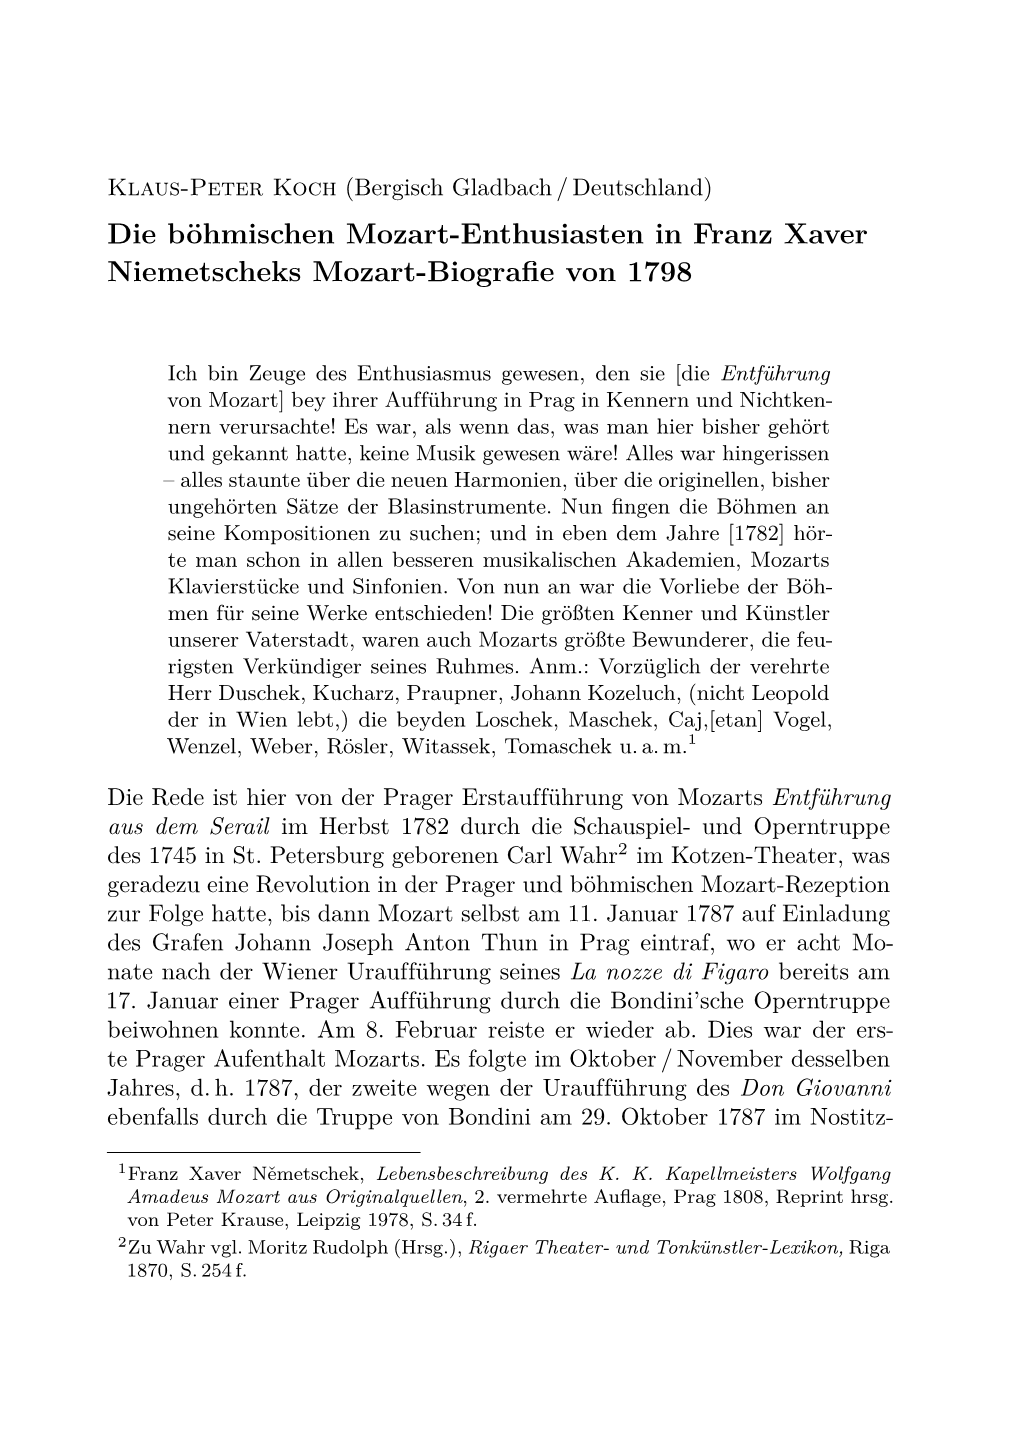 Die Böhmischen Mozart-Enthusiasten in Franz Xaver Niemetscheks Mozart-Biograﬁe Von 1798